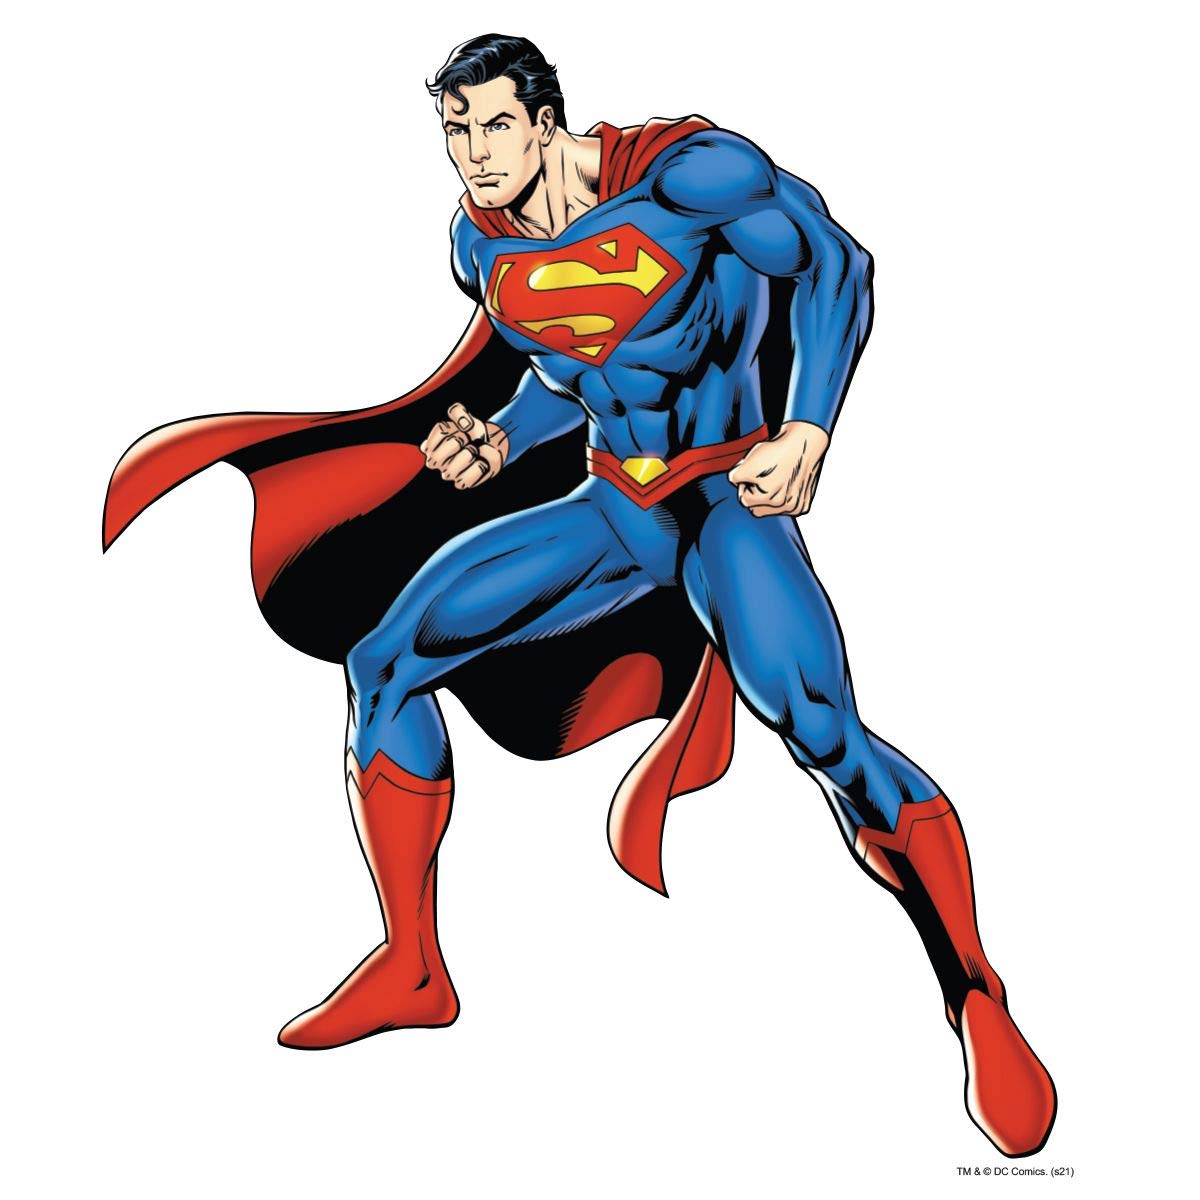 classic superman pose - Google Search | Imagenes de superman, Arte ...